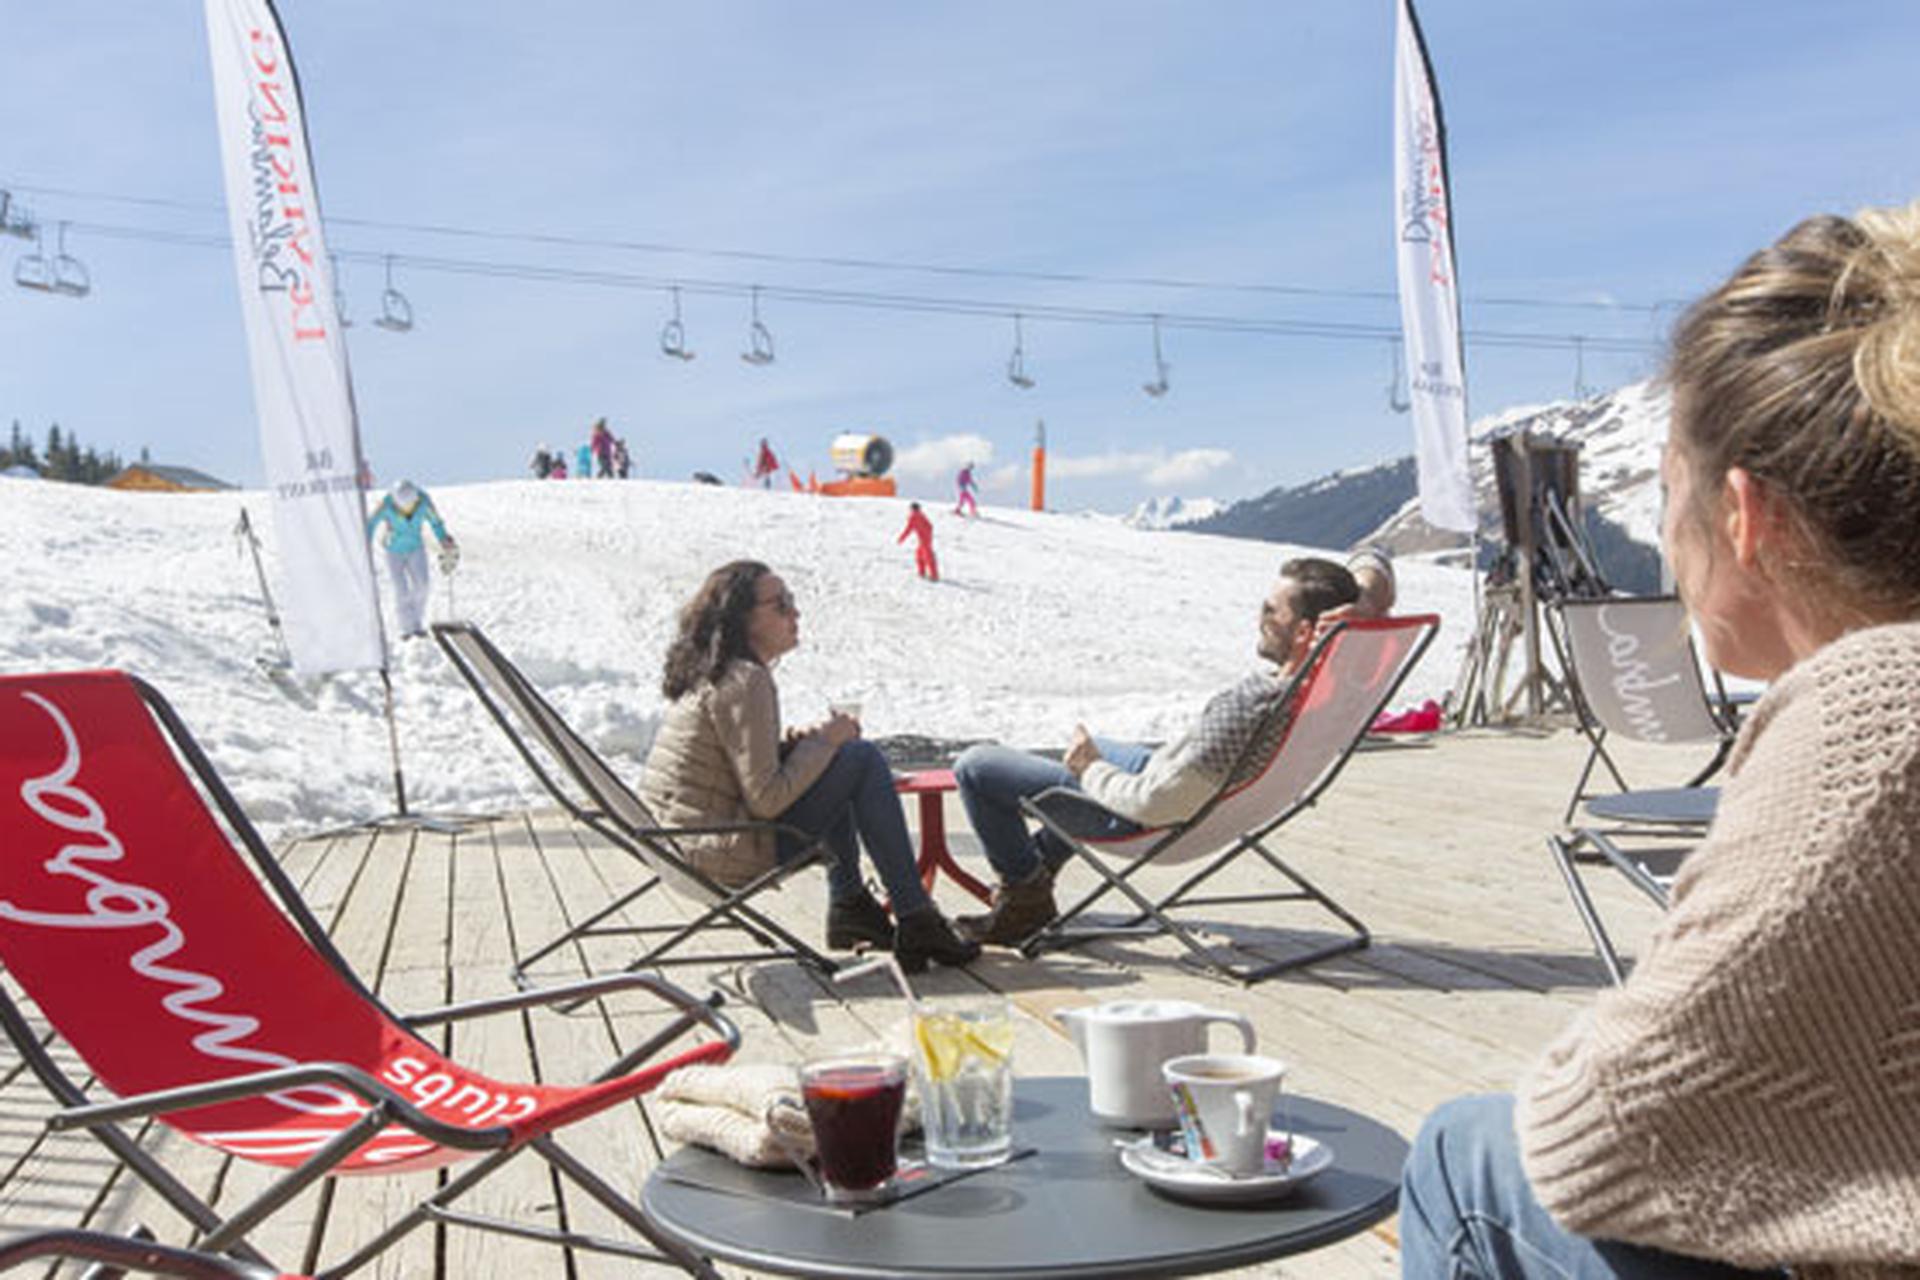 Vacances au Ski en France : jusqu'à - 29% photo 1